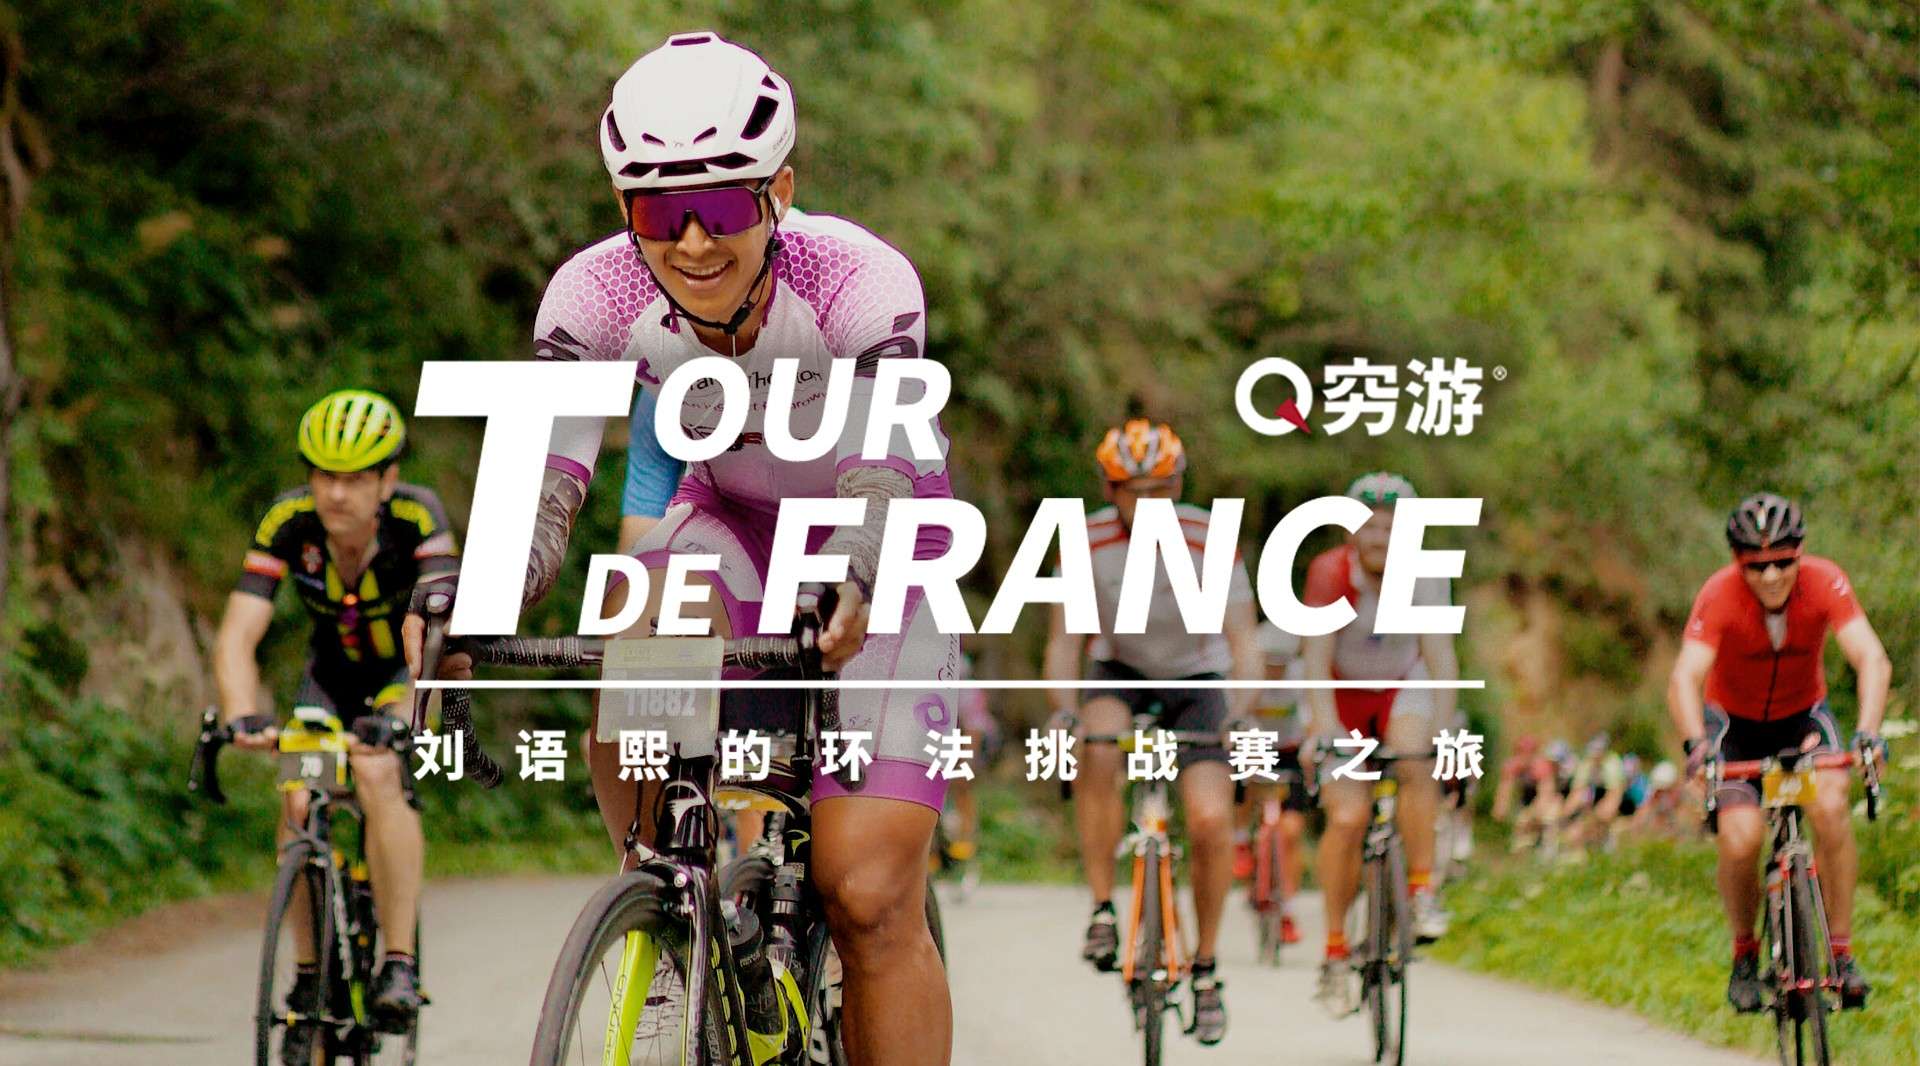 2019 Tour De France 环法自行车赛